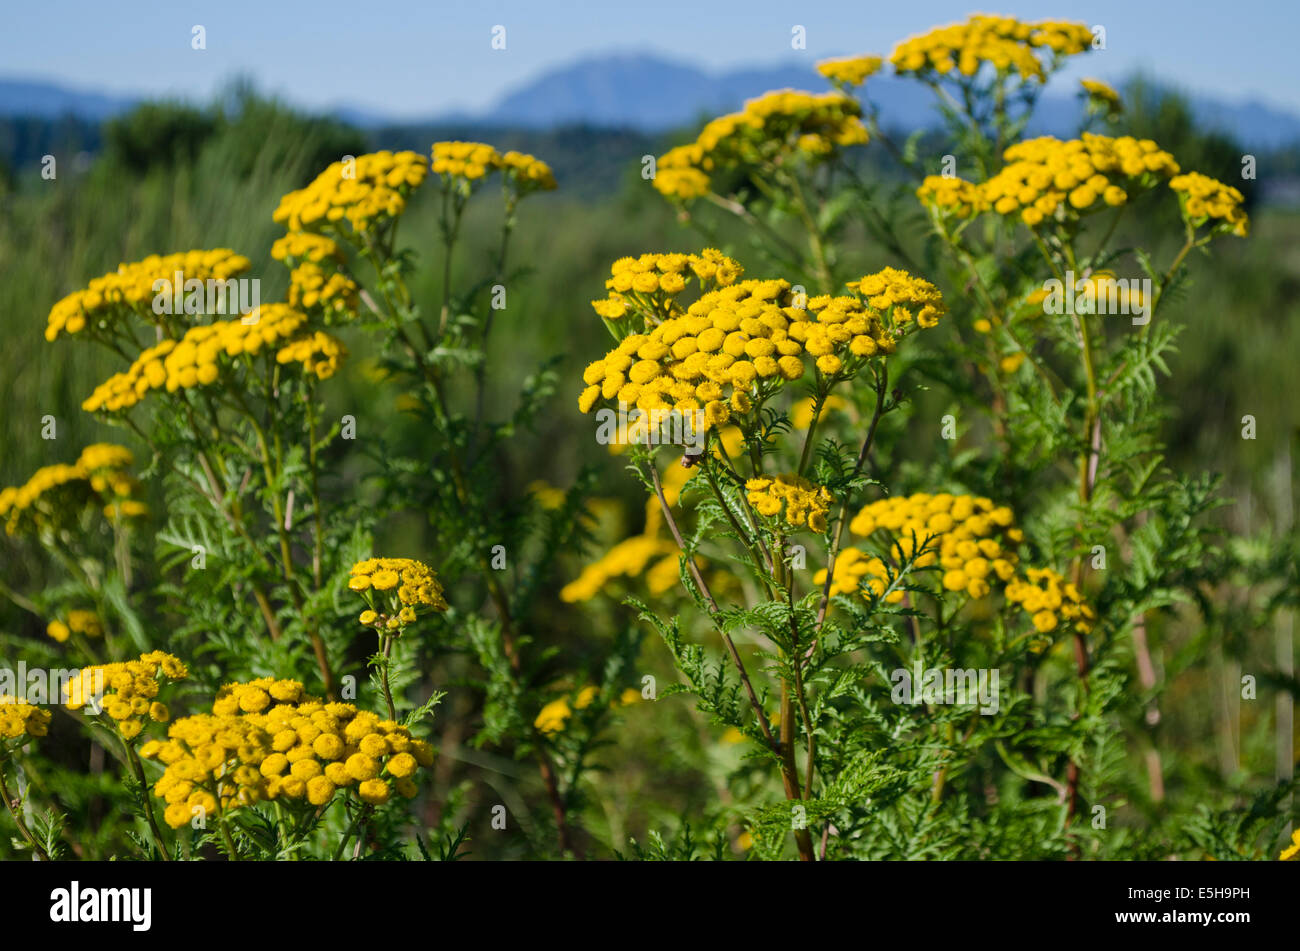 Les fleurs jaunes de tanaisie commune, une mauvaise herbe envahissante, poussant le long de la côte, à Richmond, le Grand Vancouver. Tanacetum vulgare Banque D'Images